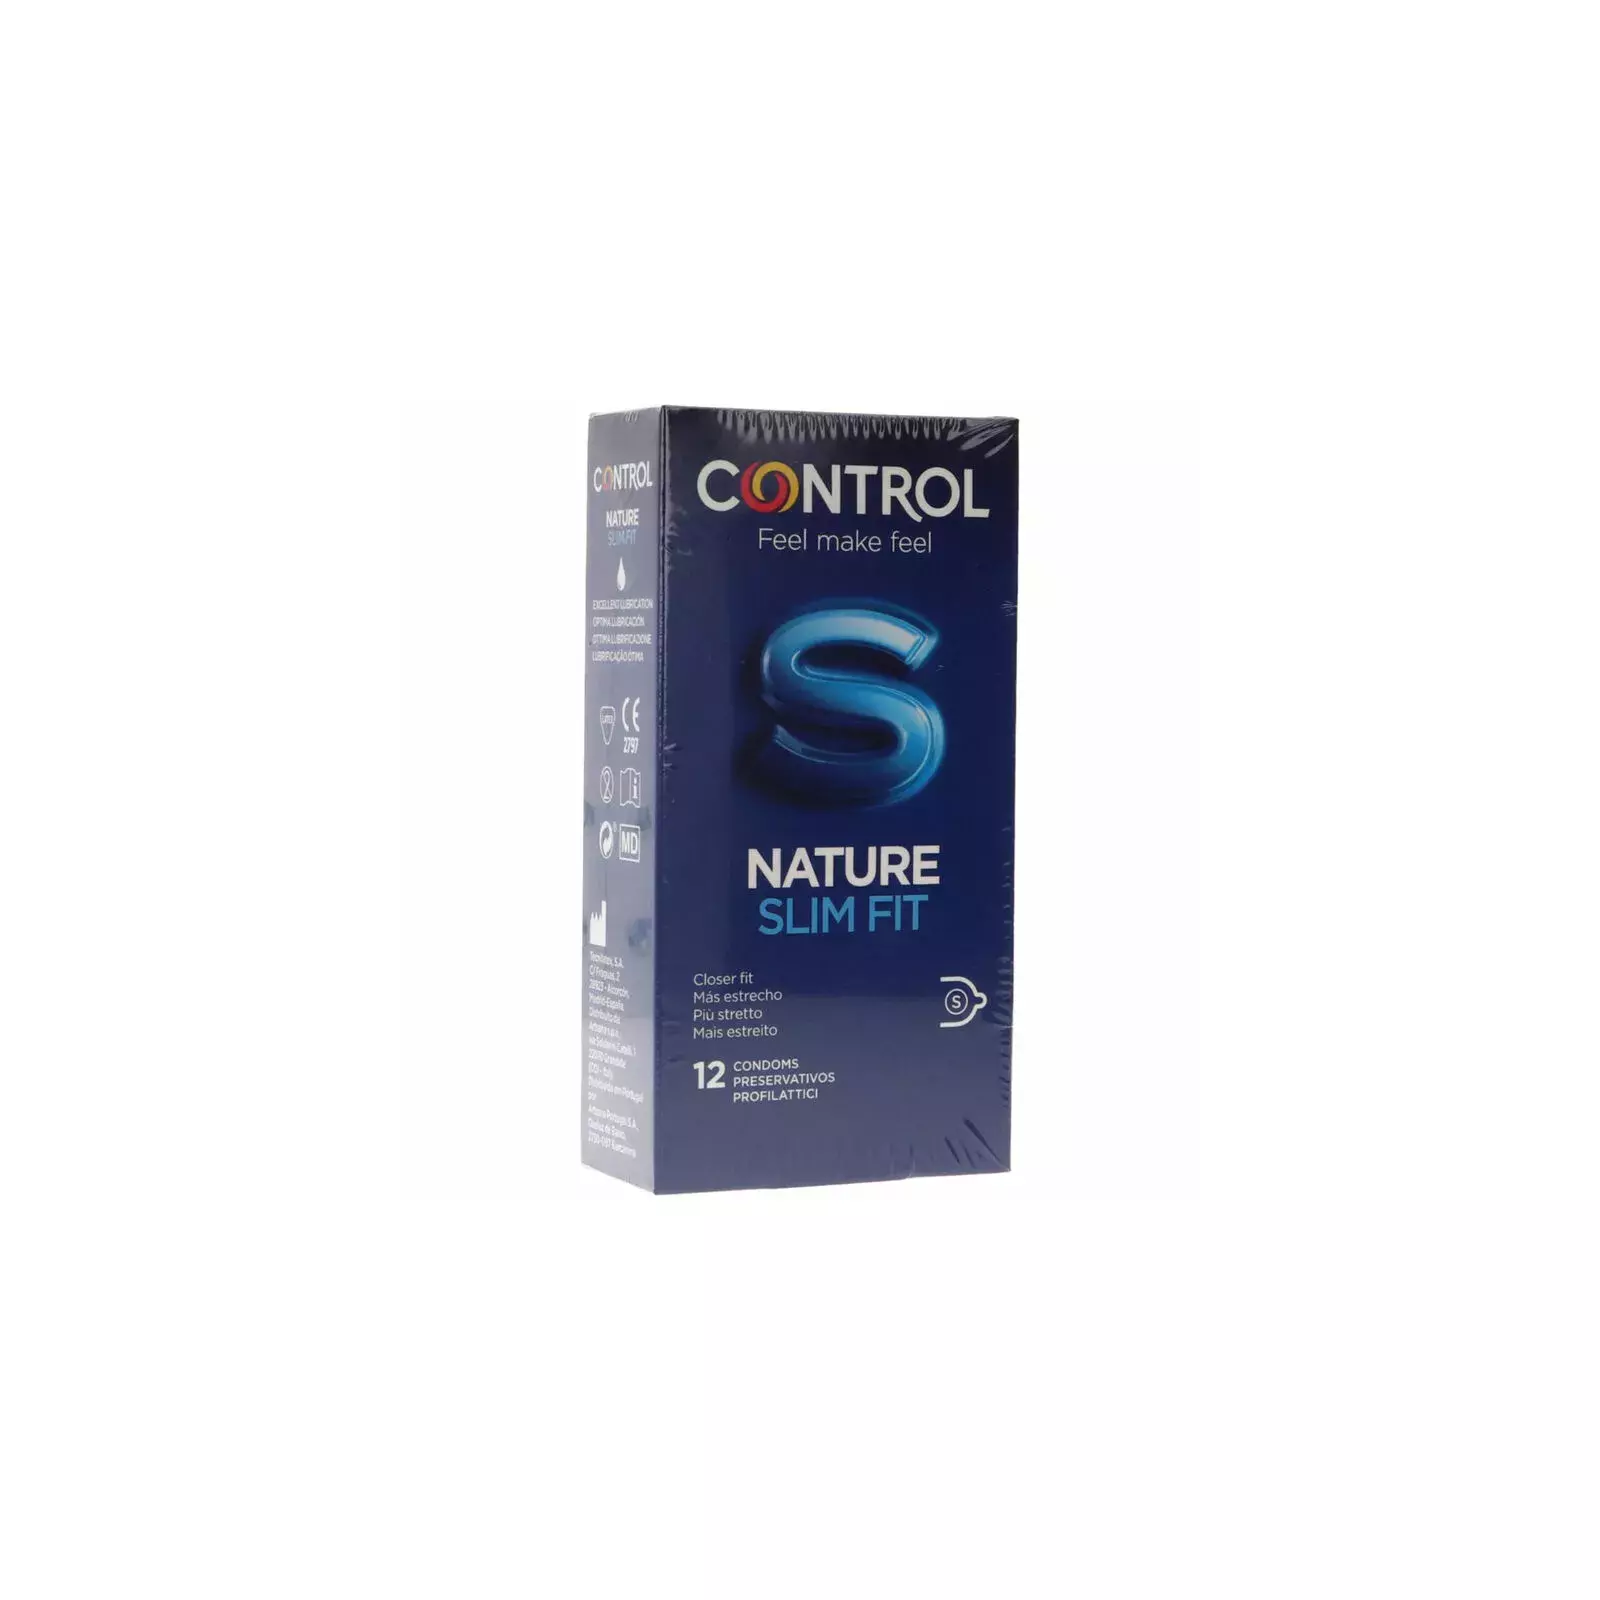 control+condoms D-231778 Photo 1